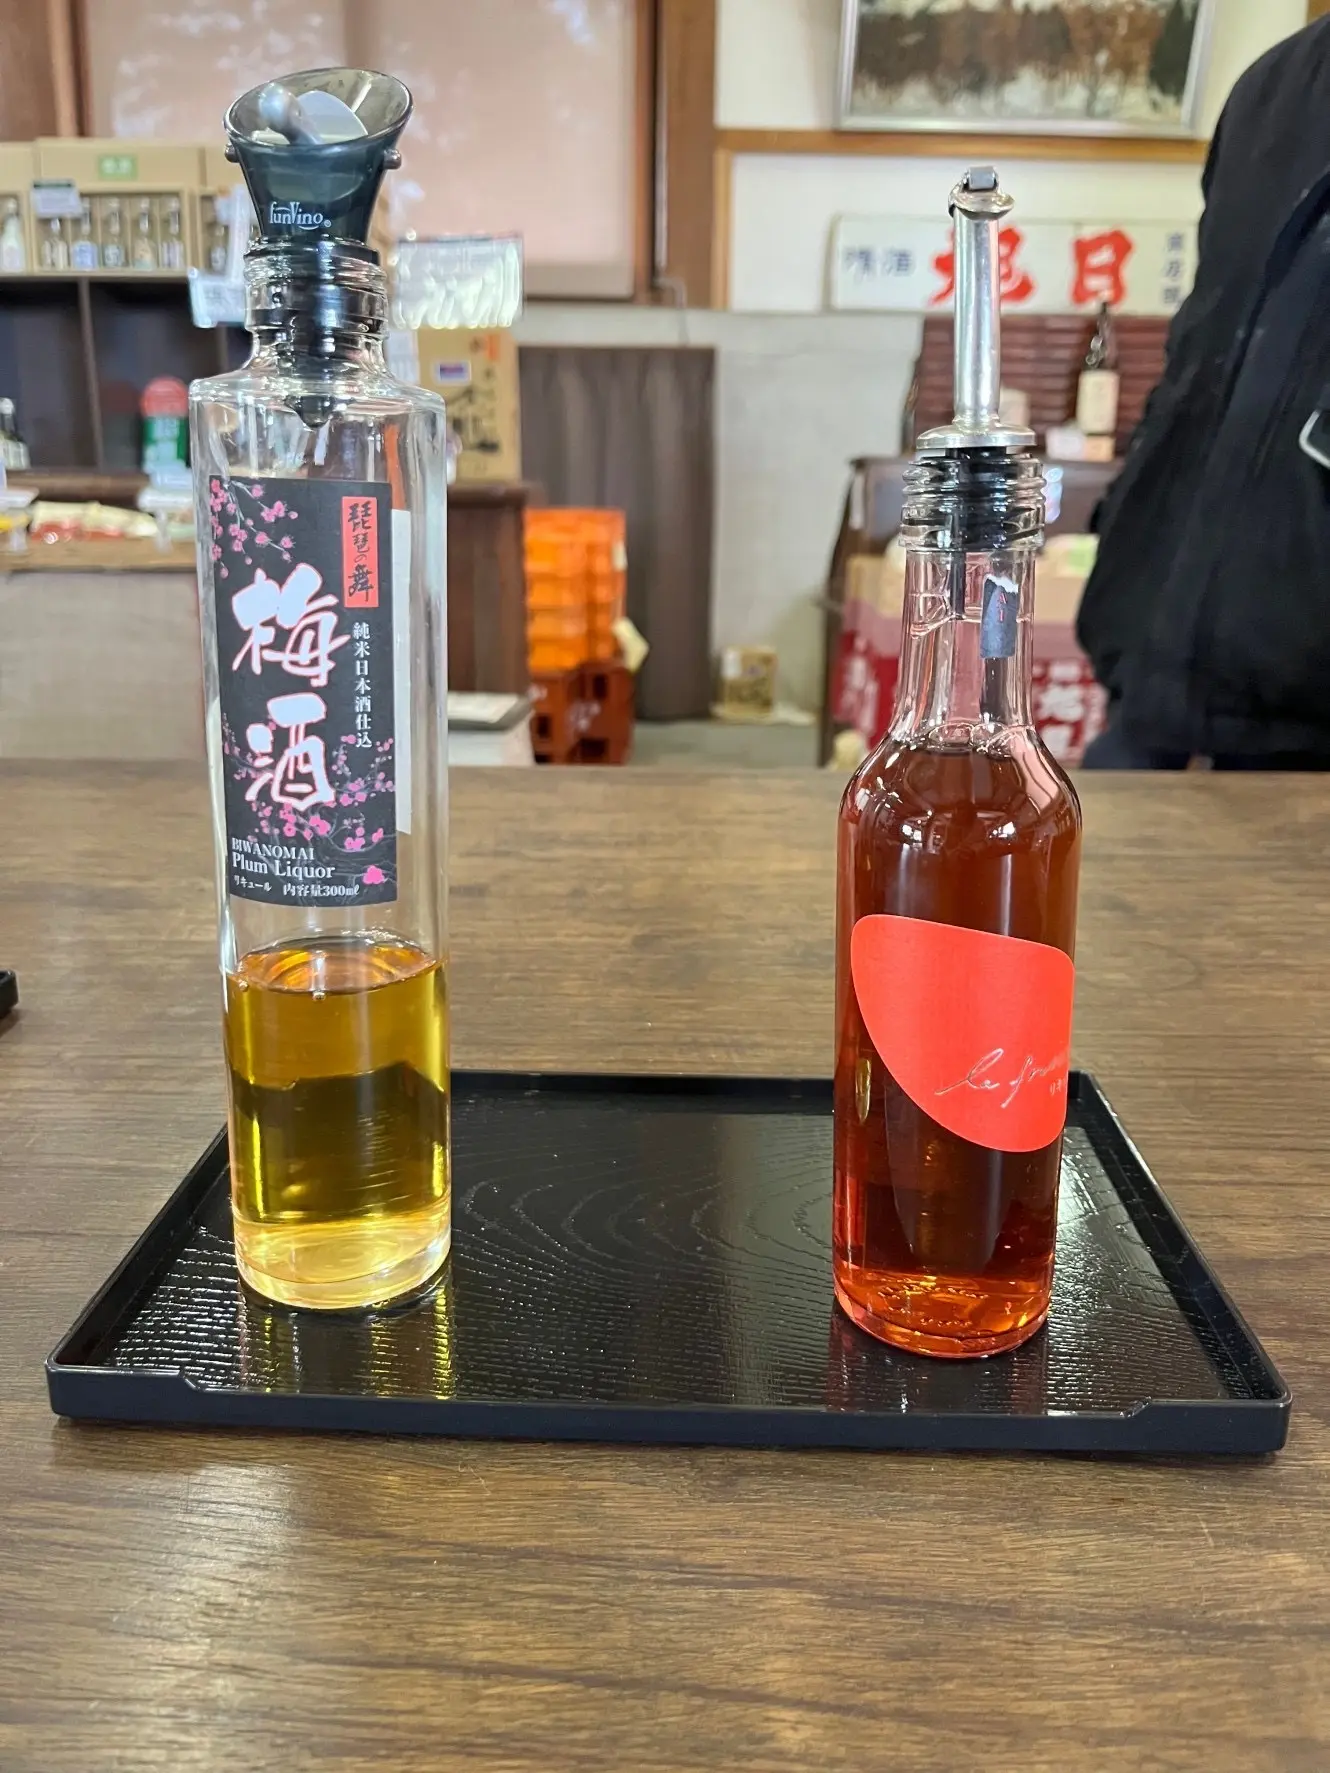 向かって左は藤居本家の純米原酒に滋賀県産の南高梅を漬け込んだという珍しい本格梅酒。右は本格苺酒「琵琶の舞ラフレーズ」